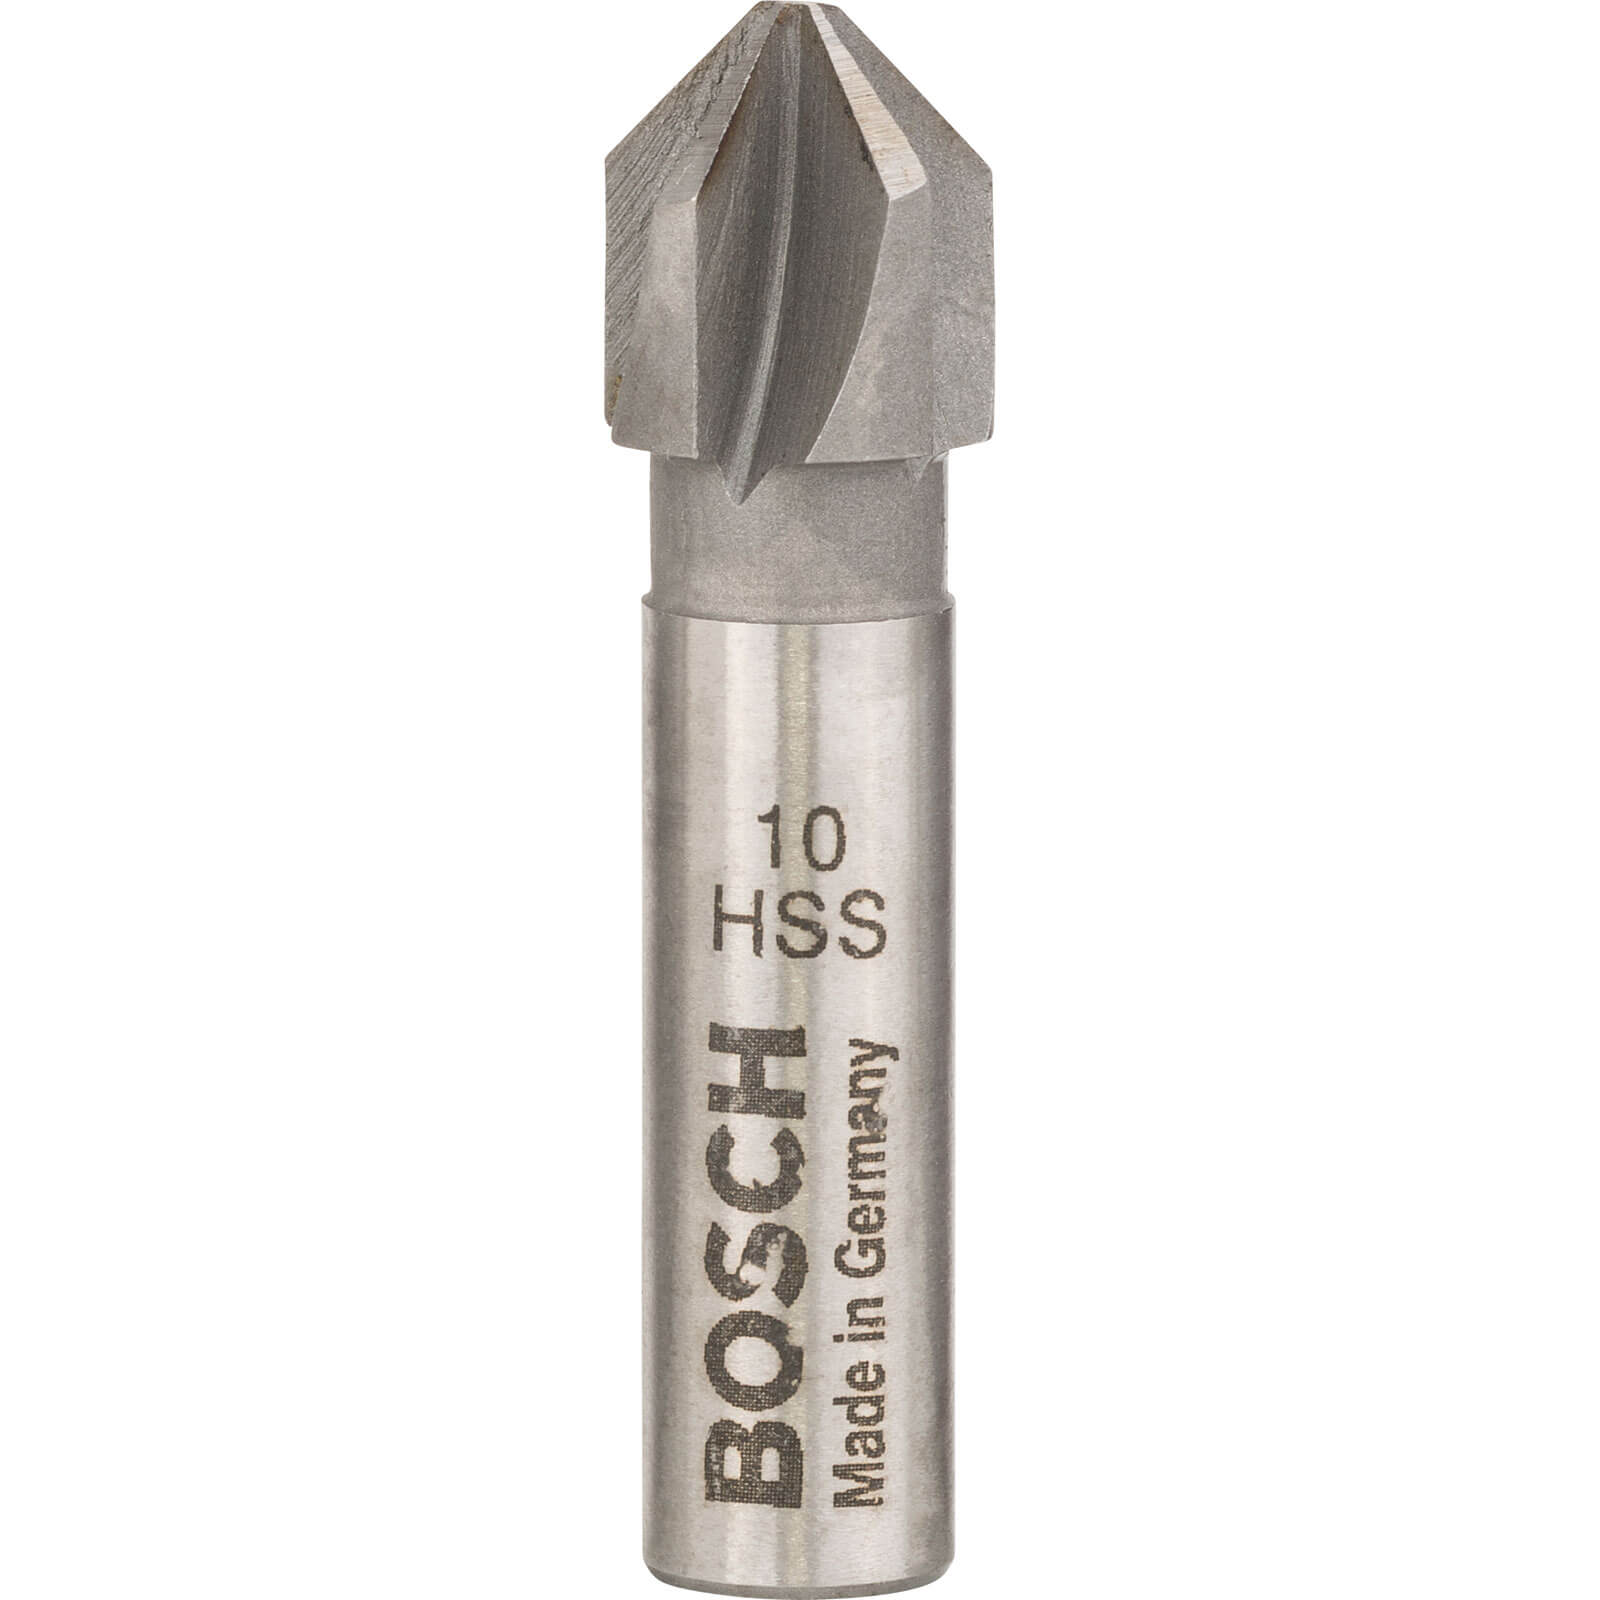 Image of Bosch HSS Countersink Bit 10mm